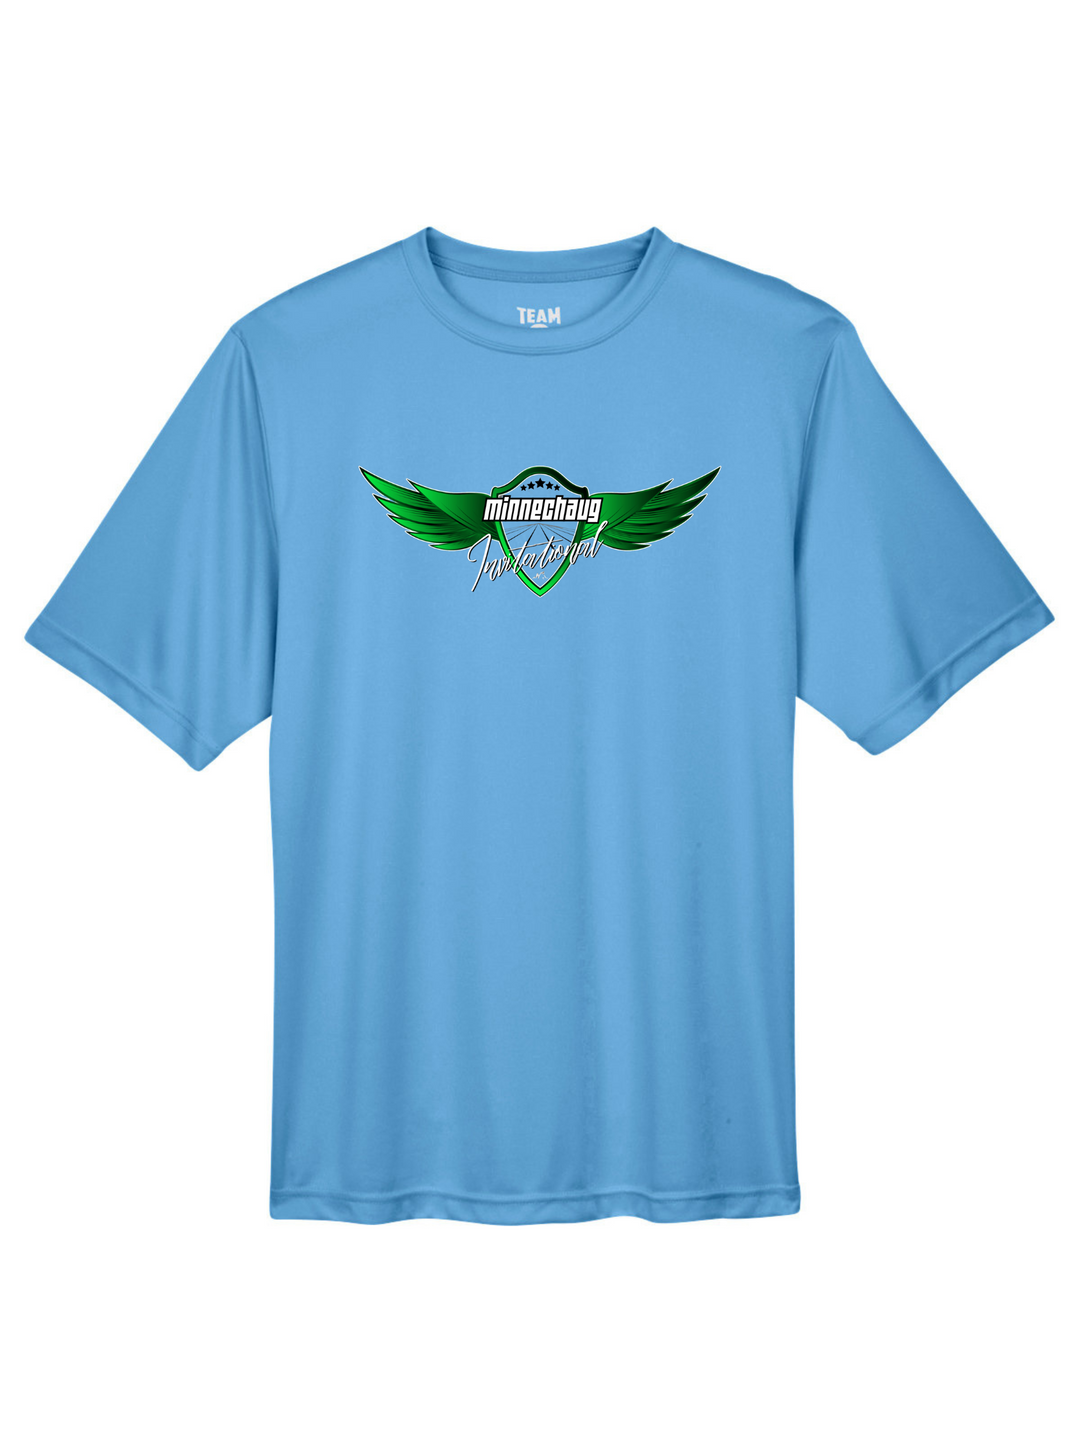 Minnechaug Invitational - Men's Performance T-Shirt (TT11)